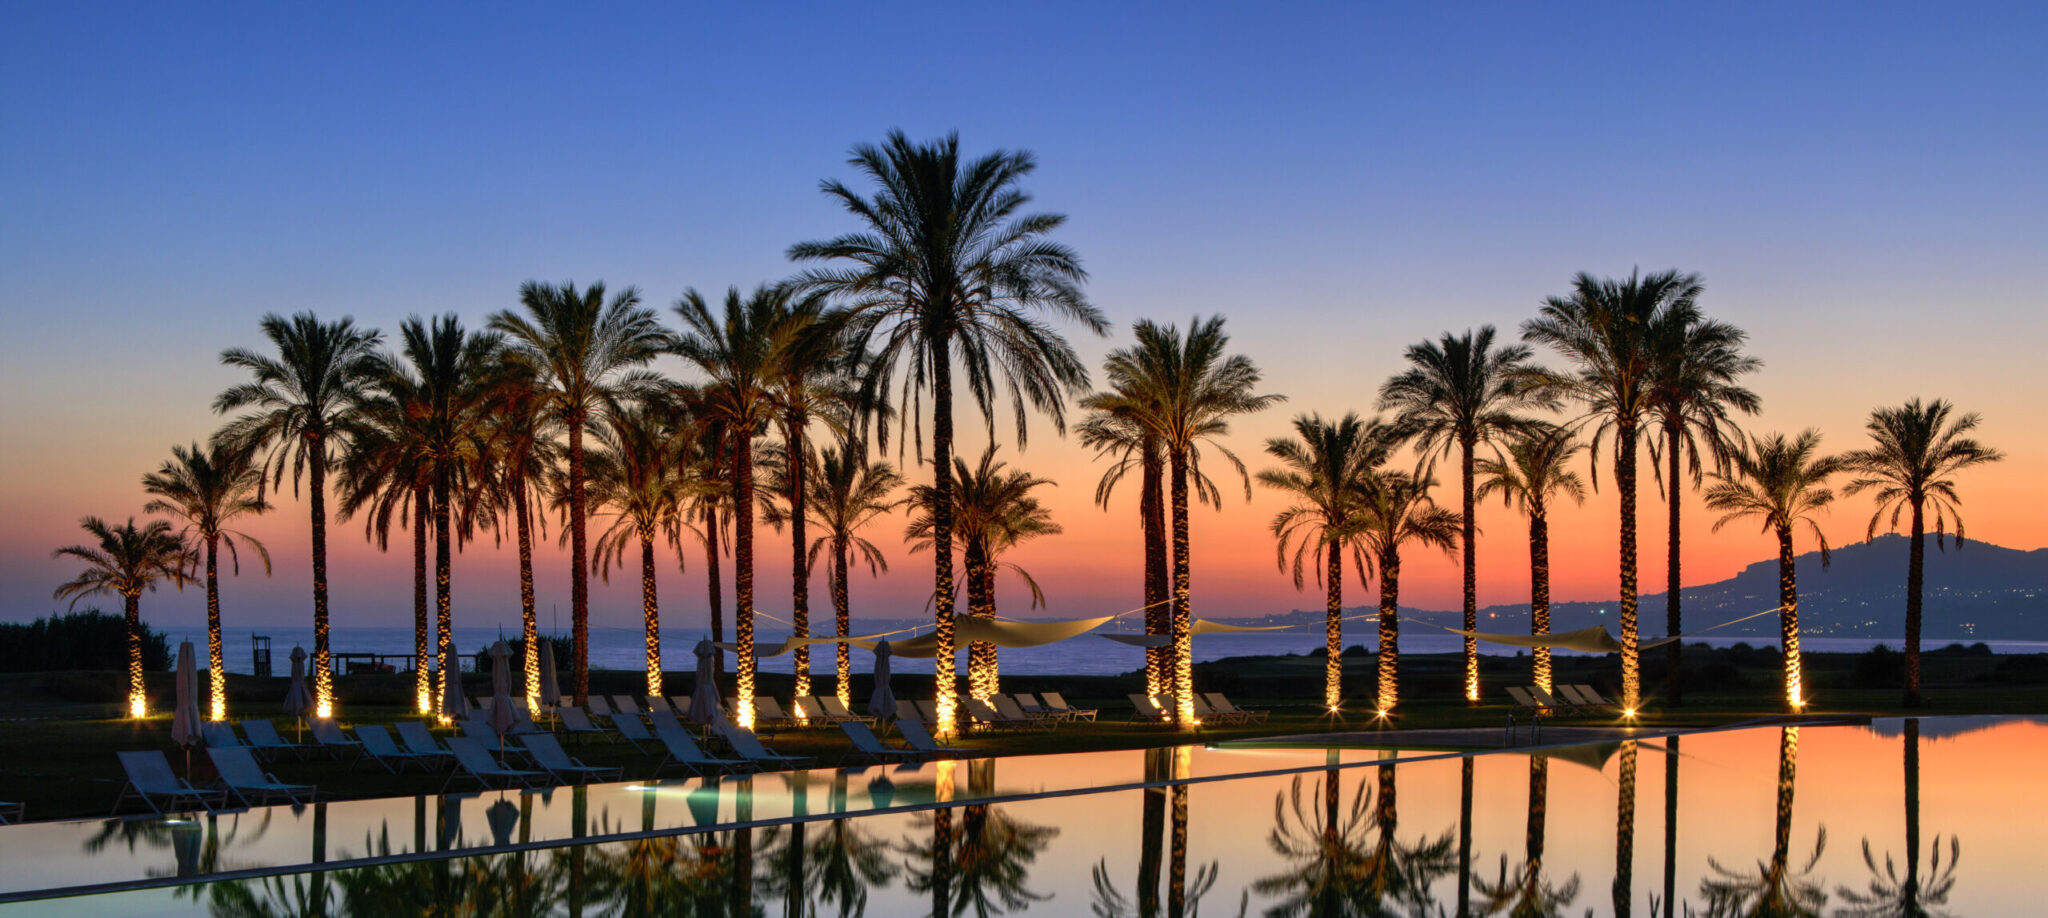 Verdura Resort Sicily, swimming pool sunset view.